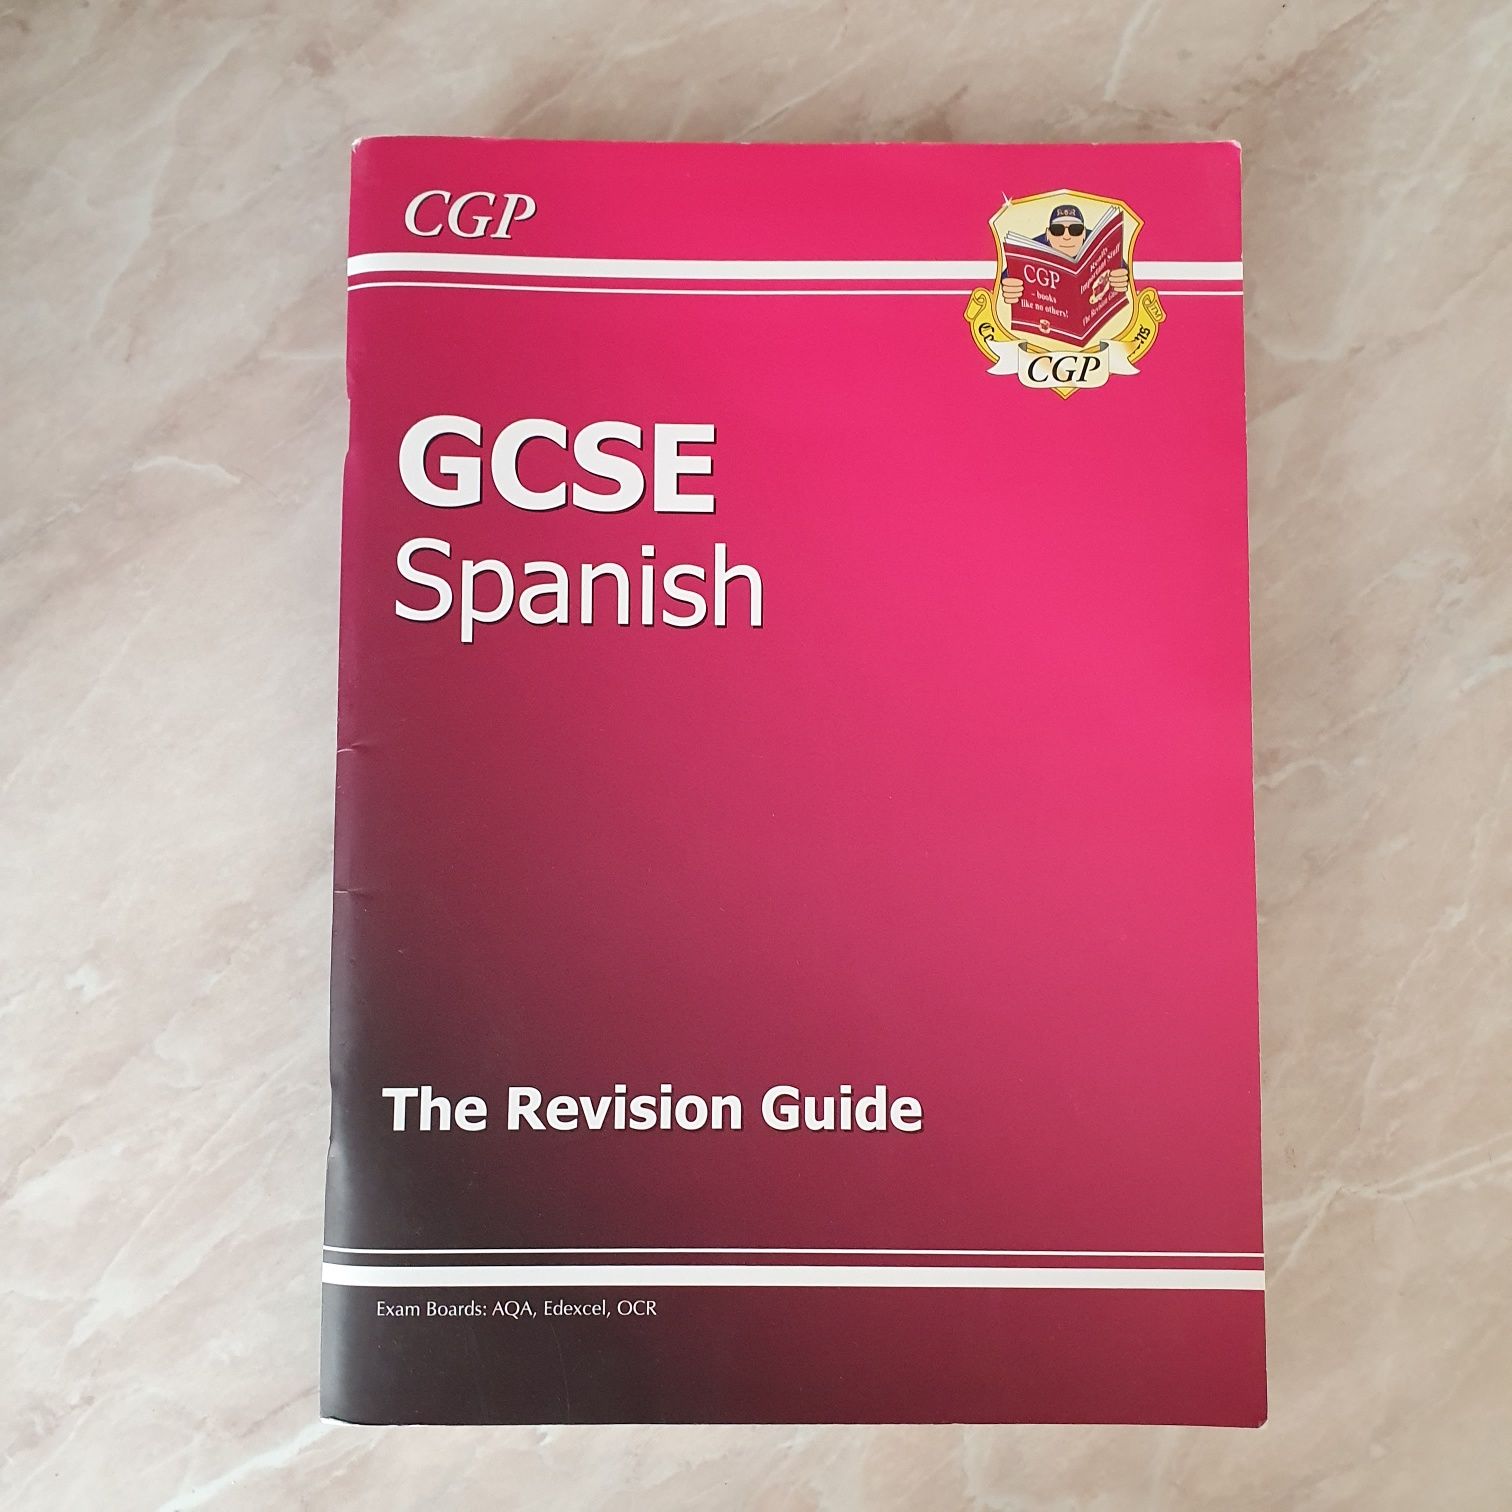 GCSE Spanish revision guide Учебник по испанскому, рабочая тетрадь